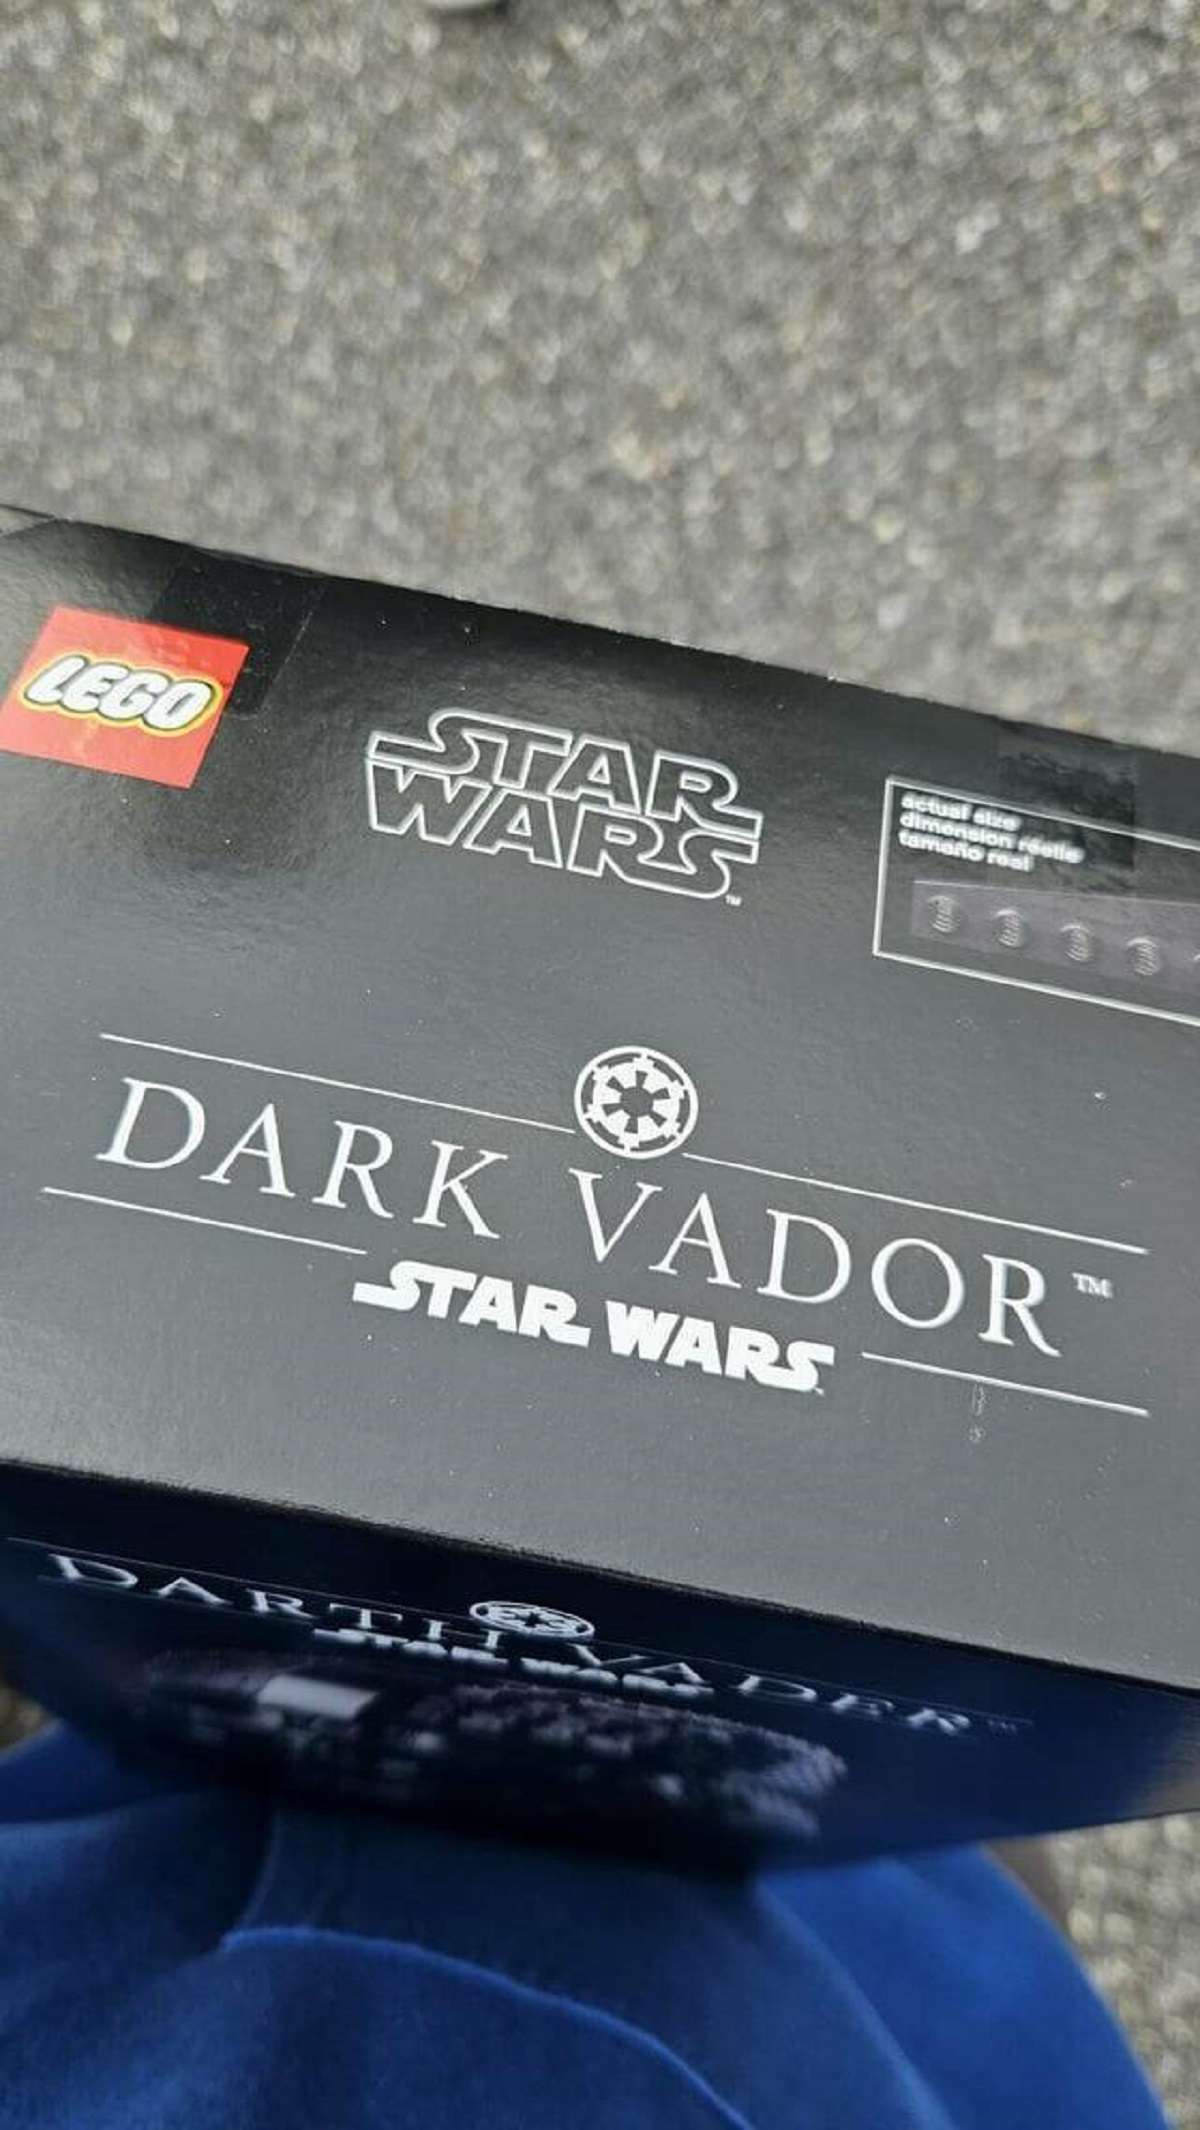 ""Dark Vador" lego set I got for Christmas"